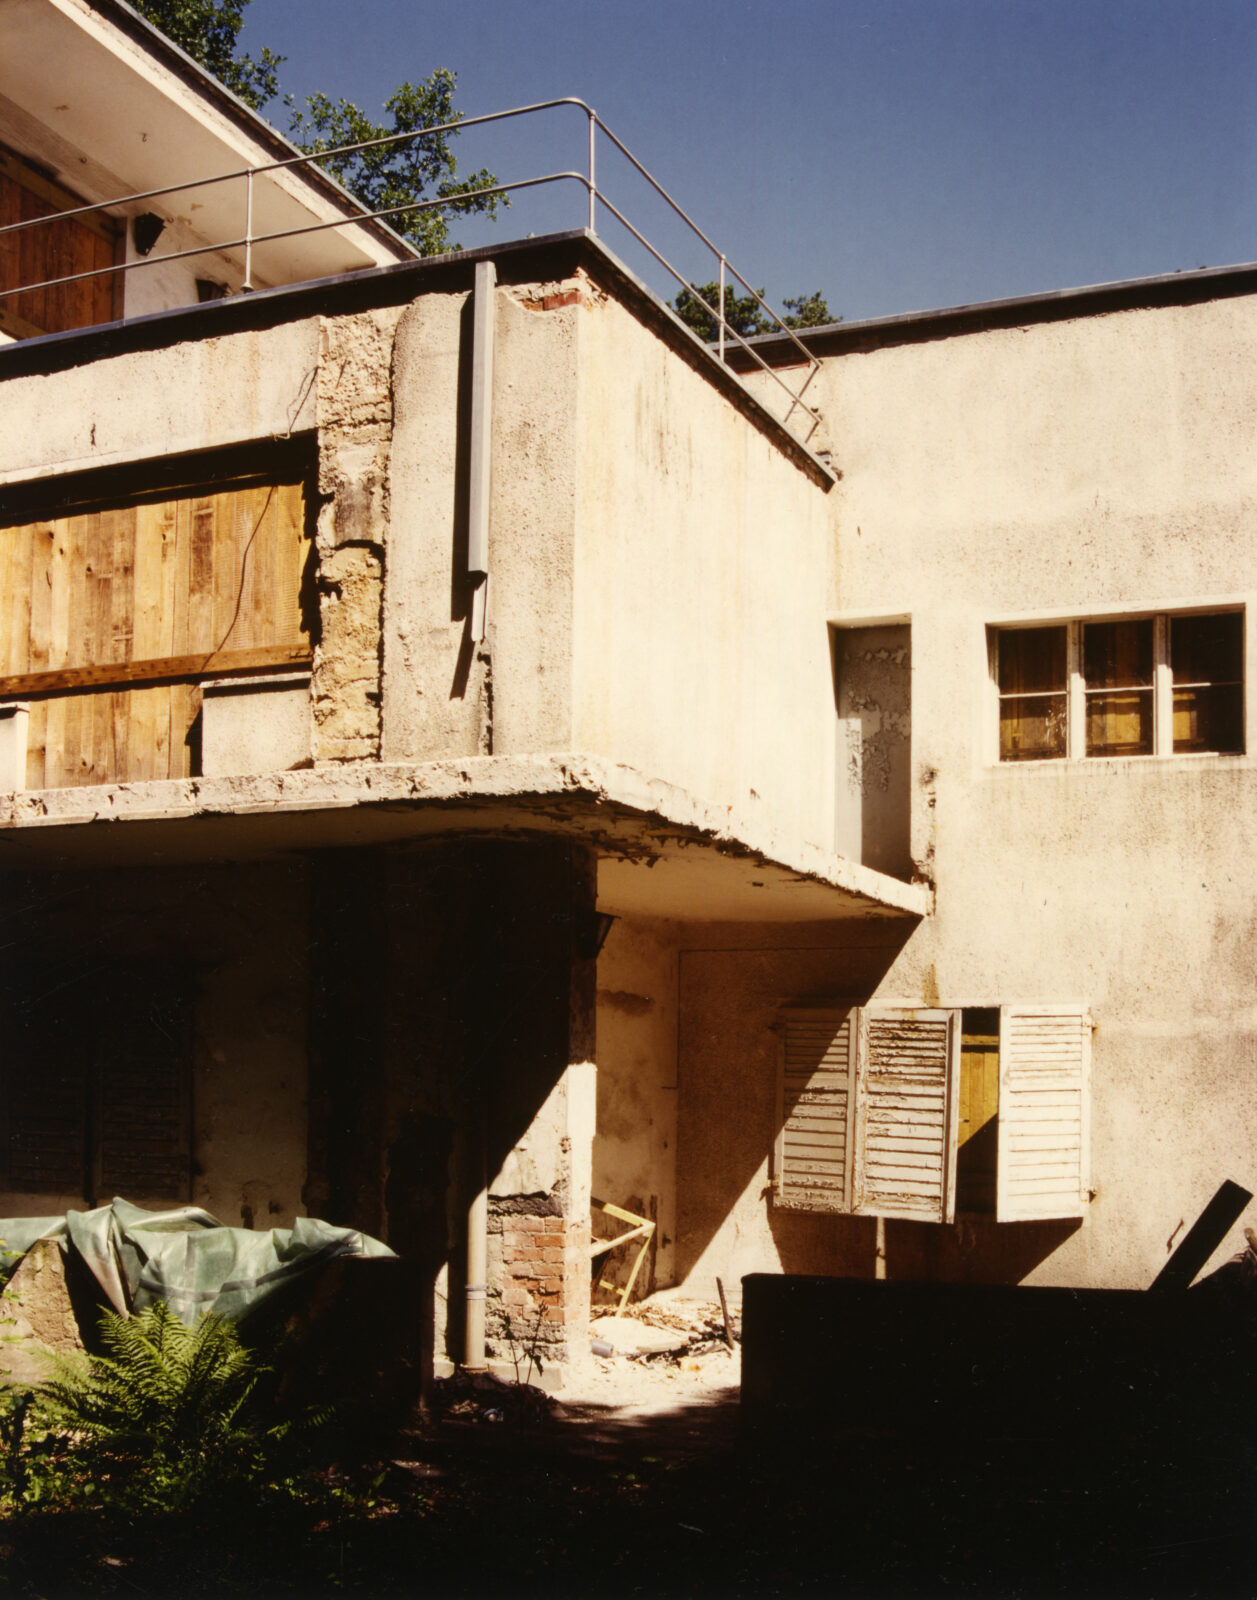 Detail einer Hausecke im desolaten Zustand. Der Balkon ist verfallen, die Fensterläden hängen schief. Die Fensteröffnungen sind mit Holzbrettern verschlossen.